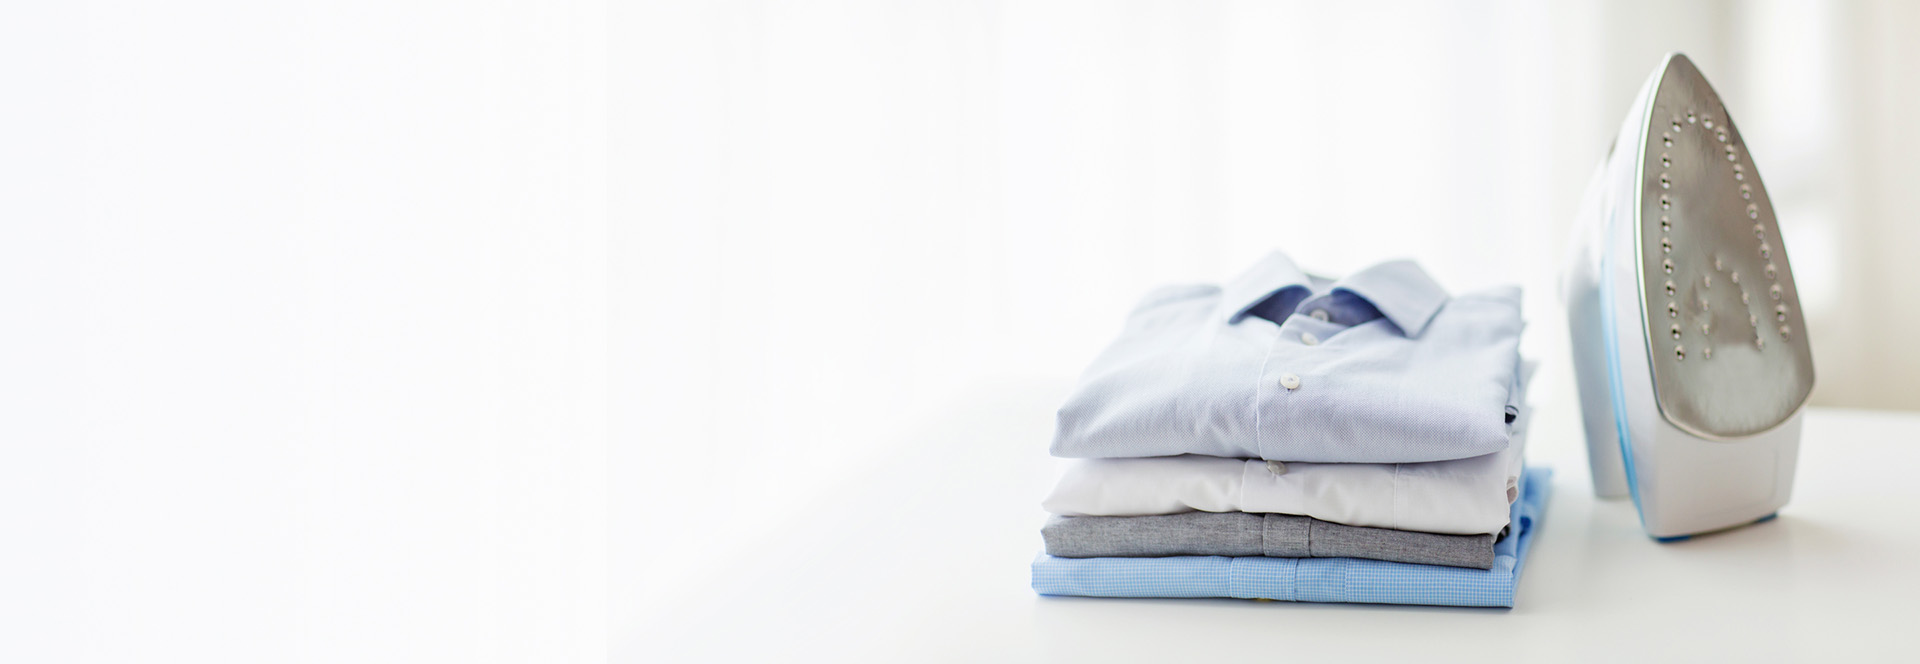 Folded shirts next to iron